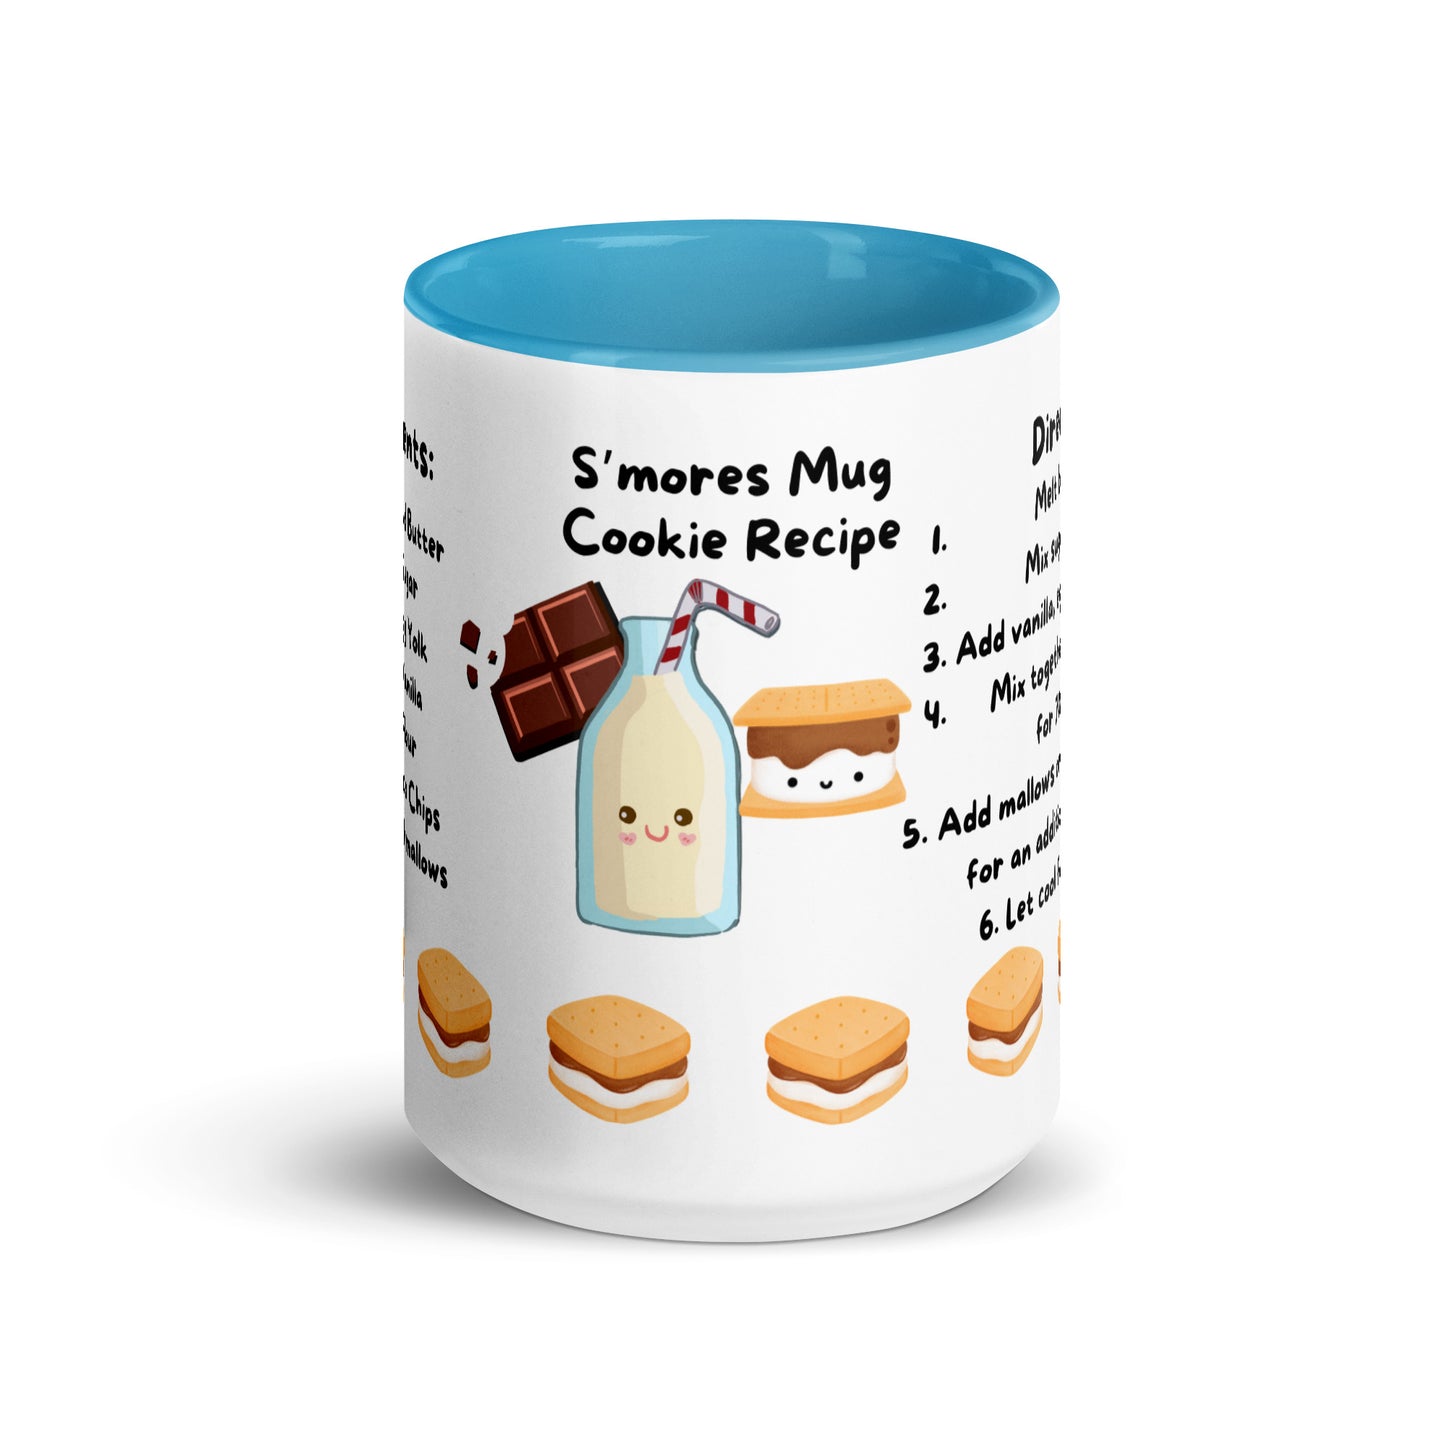 S'mores Cookie *Mug Cake Recipe Mug*